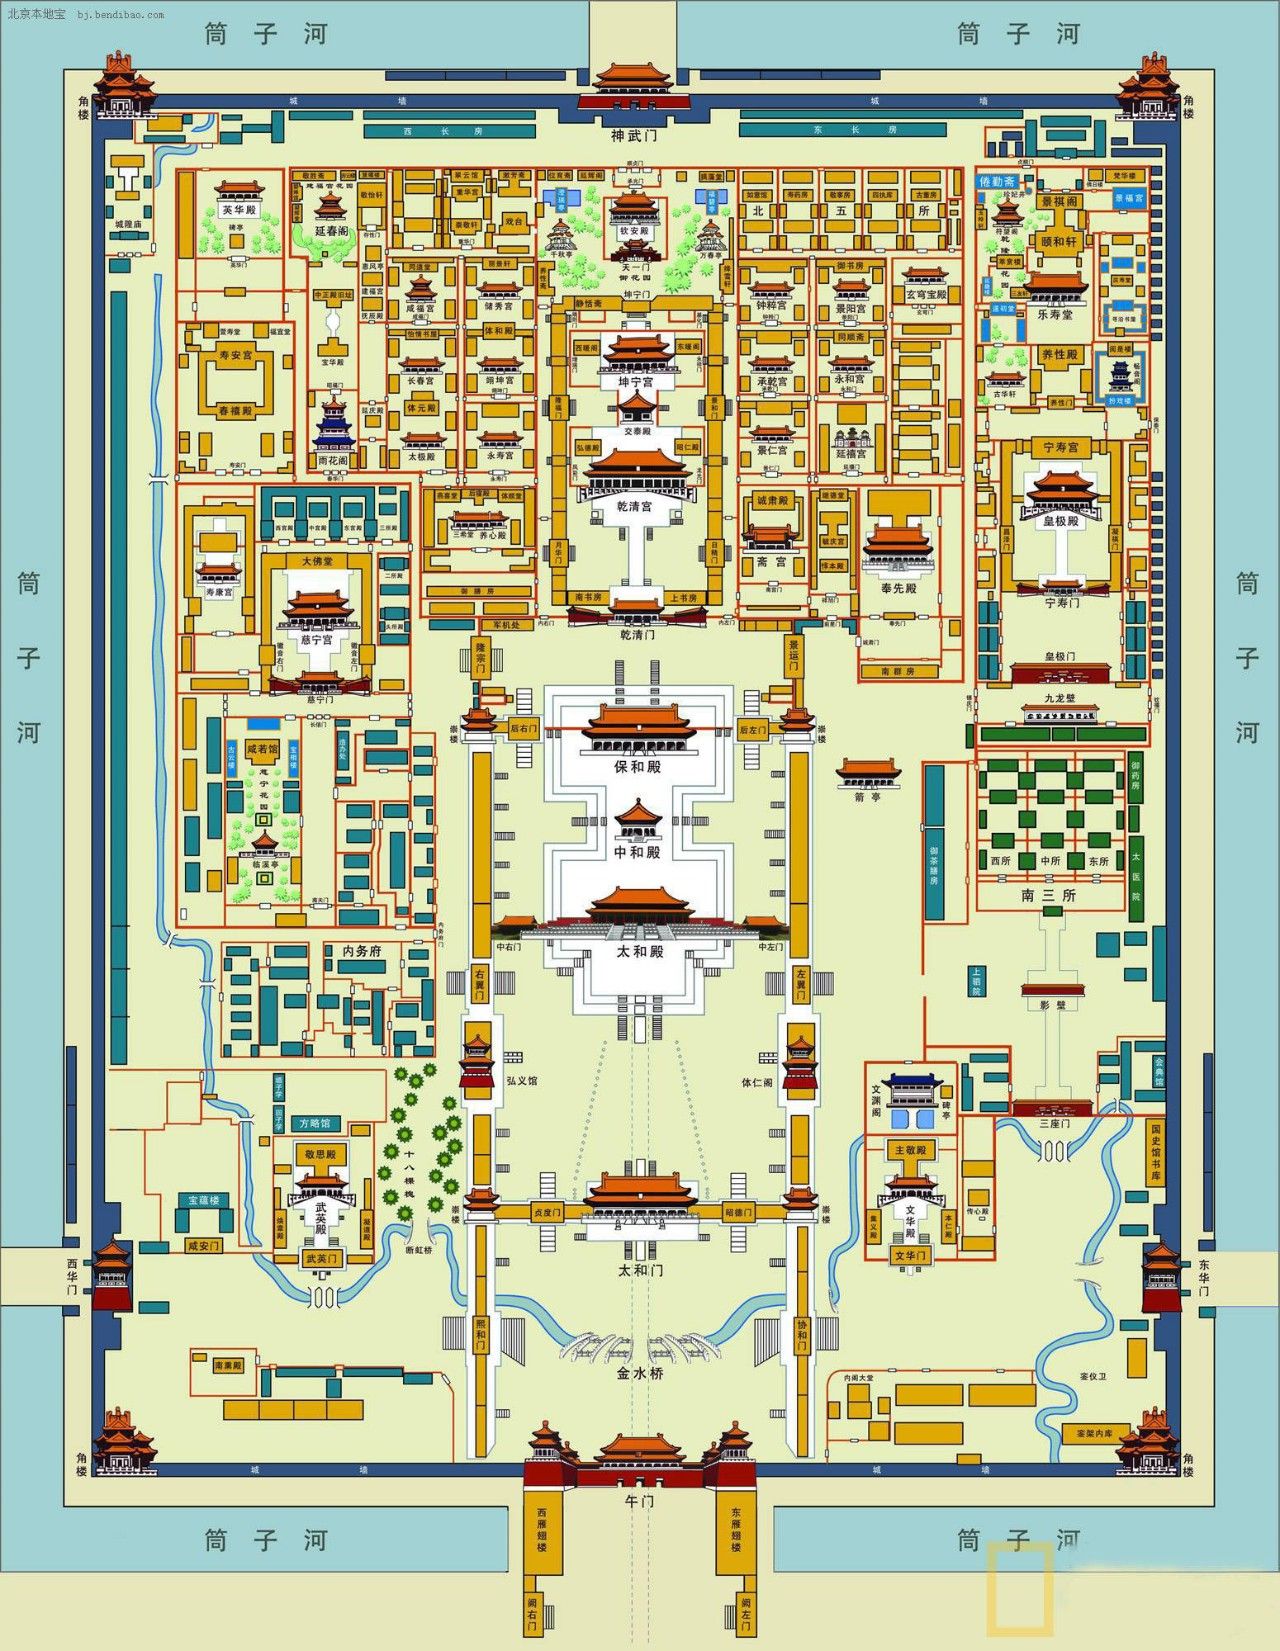 附2:故宫博物院交通图(点击图片可放大观看)